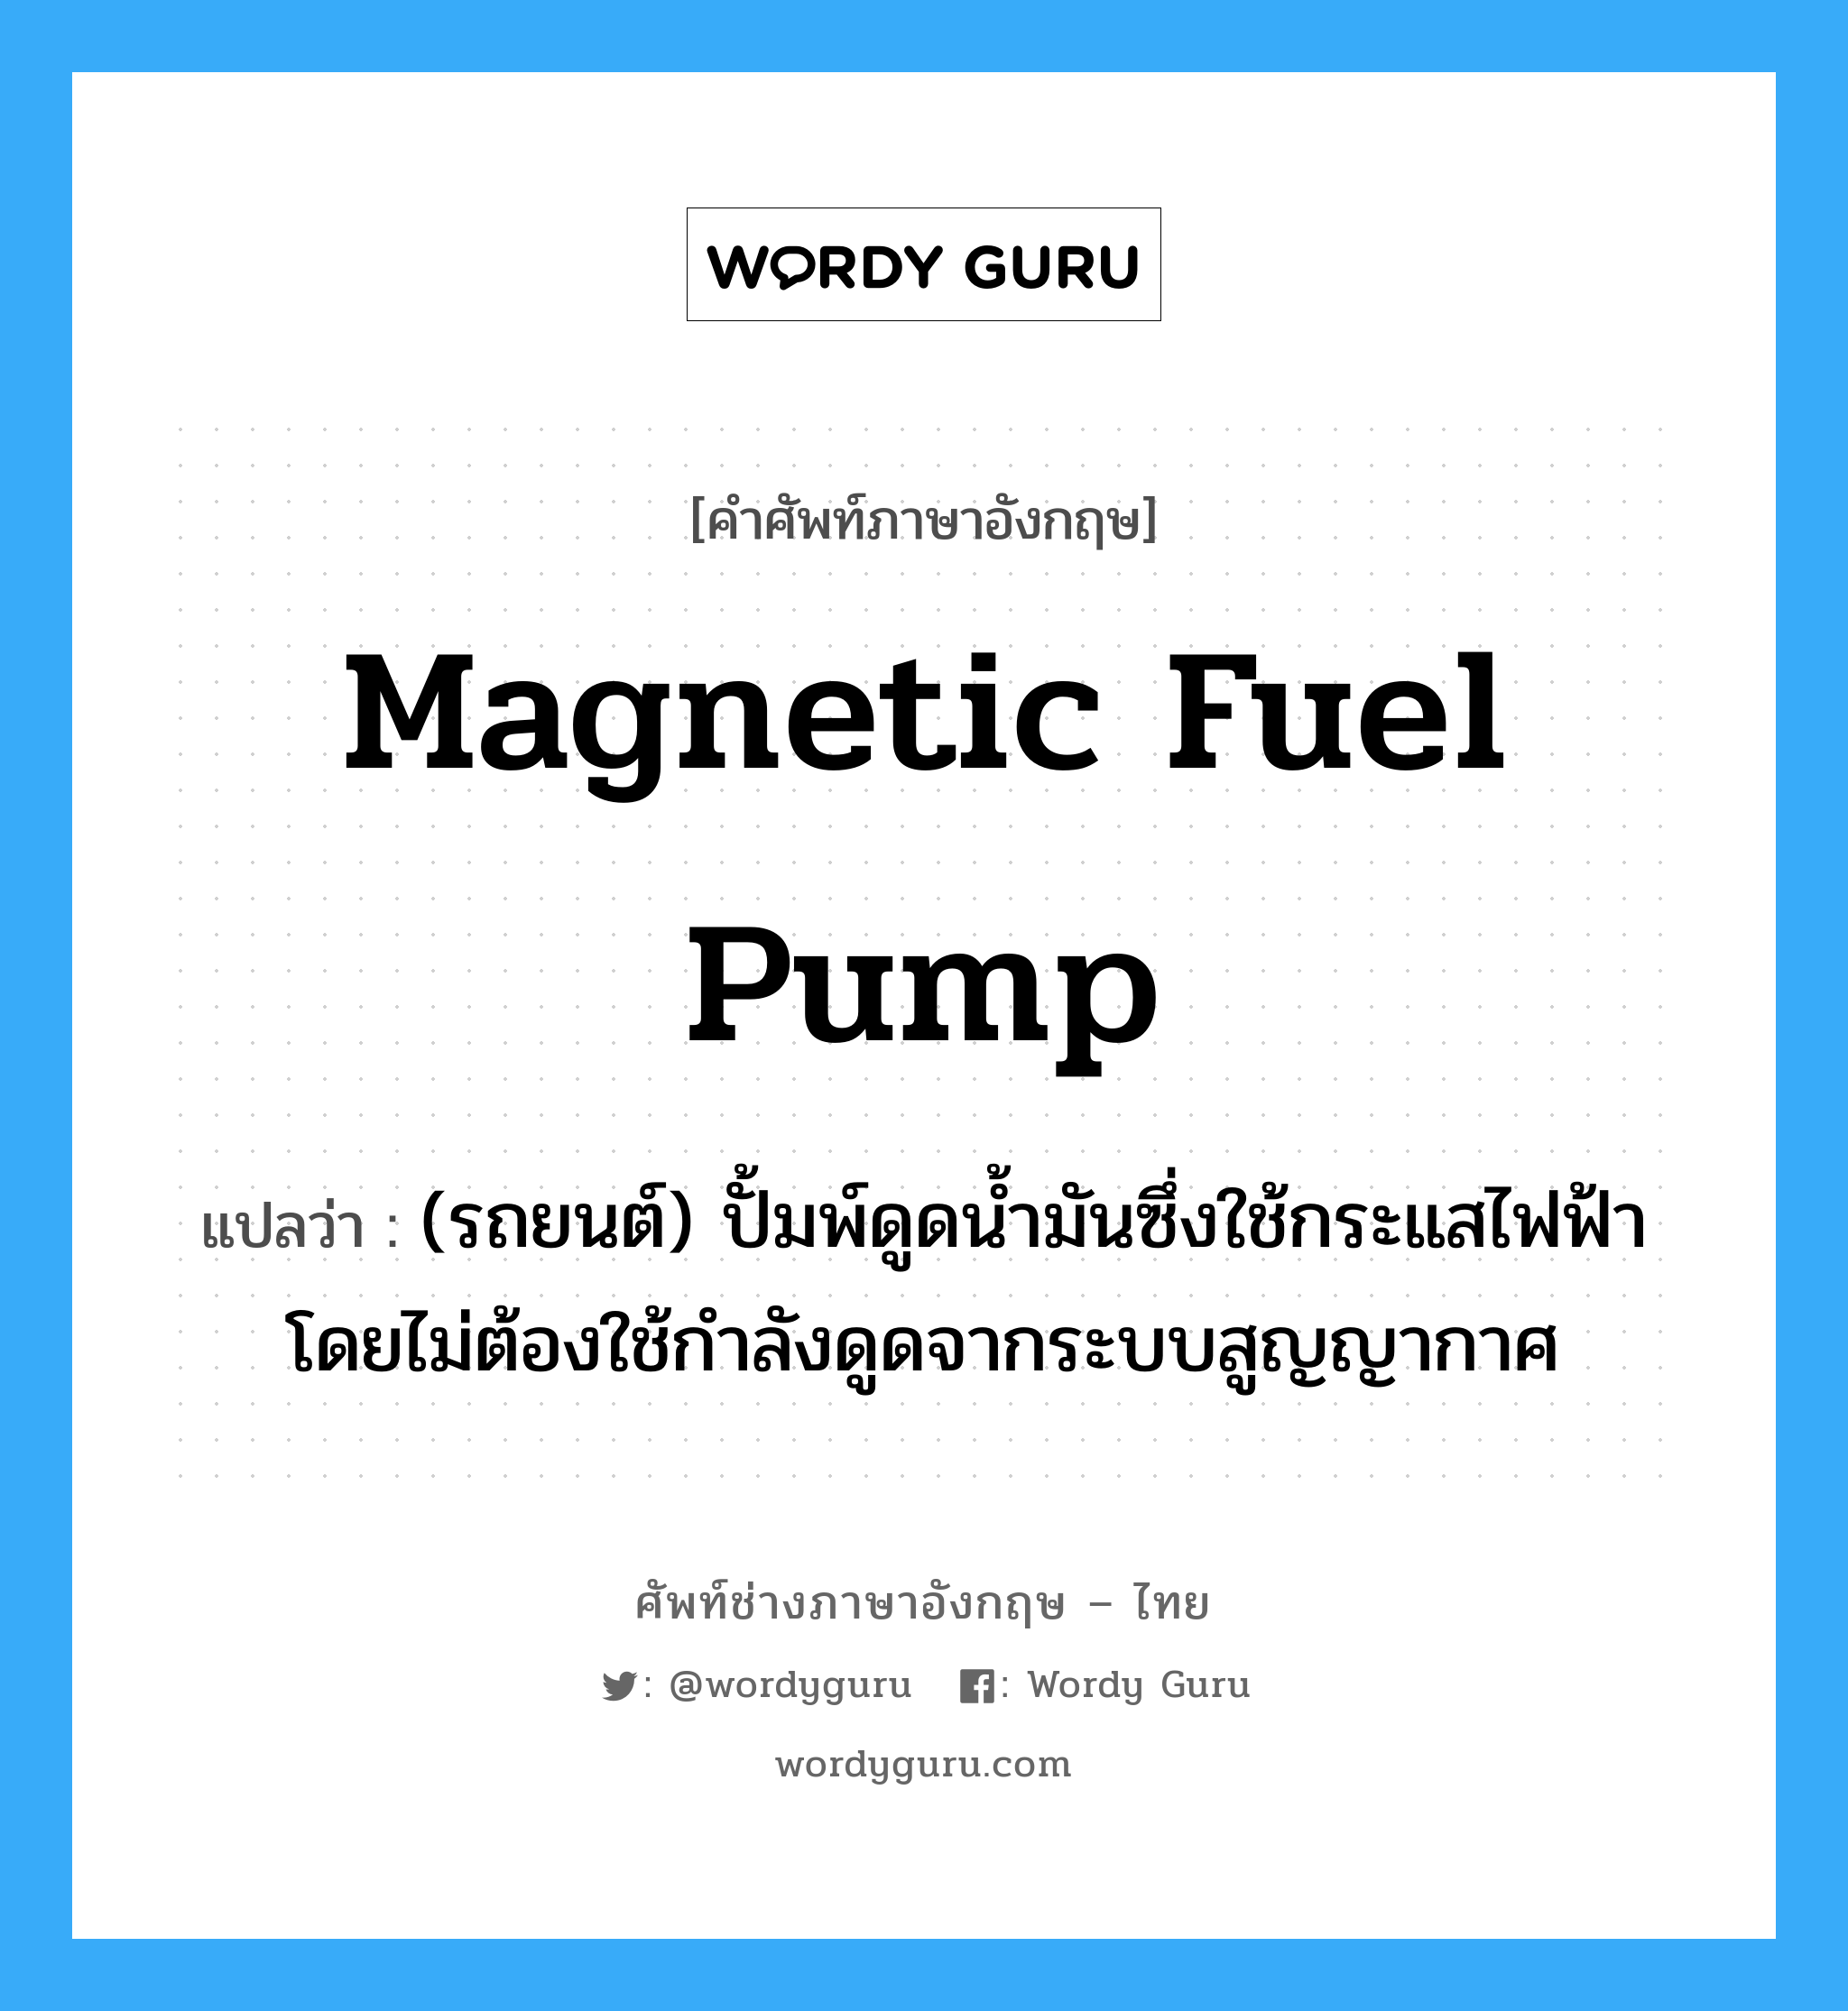 magnetic fuel pump แปลว่า?, คำศัพท์ช่างภาษาอังกฤษ - ไทย magnetic fuel pump คำศัพท์ภาษาอังกฤษ magnetic fuel pump แปลว่า (รถยนต์) ปั้มพ์ดูดน้ำมันซึ่งใช้กระแสไฟฟ้าโดยไม่ต้องใช้กำลังดูดจากระบบสูญญากาศ